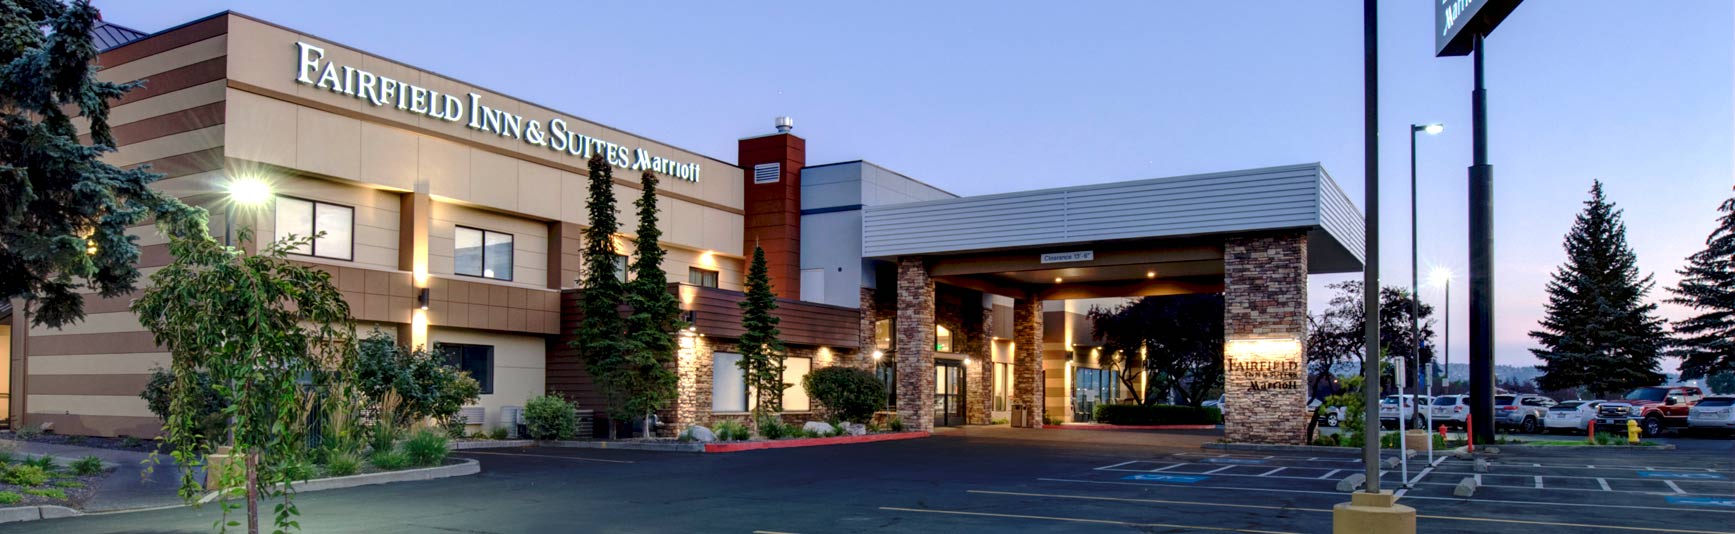 Fairfield Inn & Suites – Spokane Valley